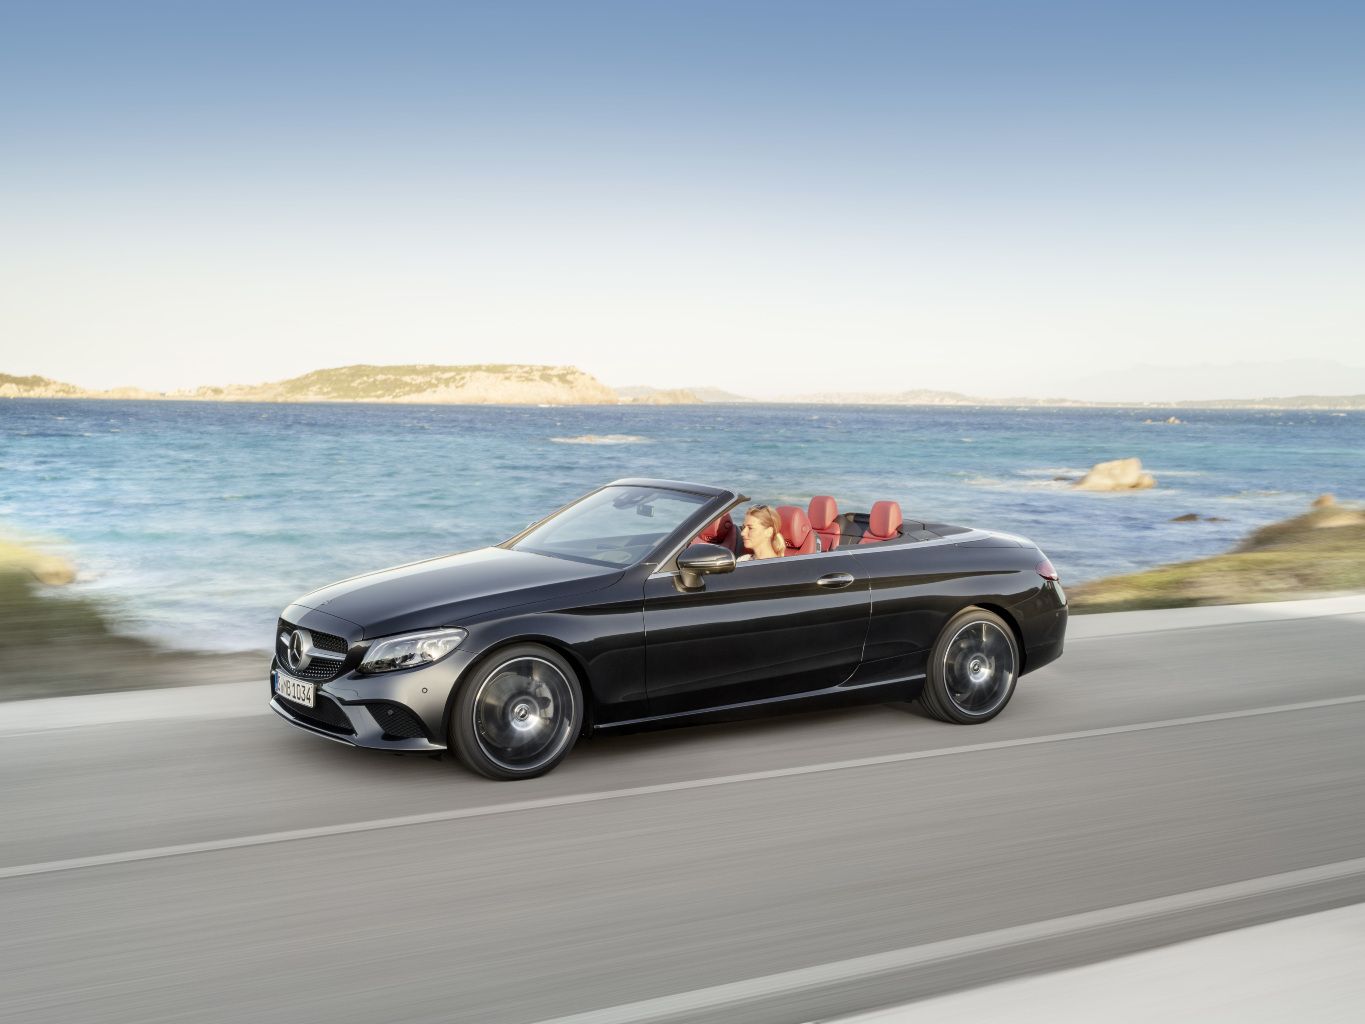 Bereit für den Sommer: Das neue Mercedes C-Klasse Cabriolet -   Magazin